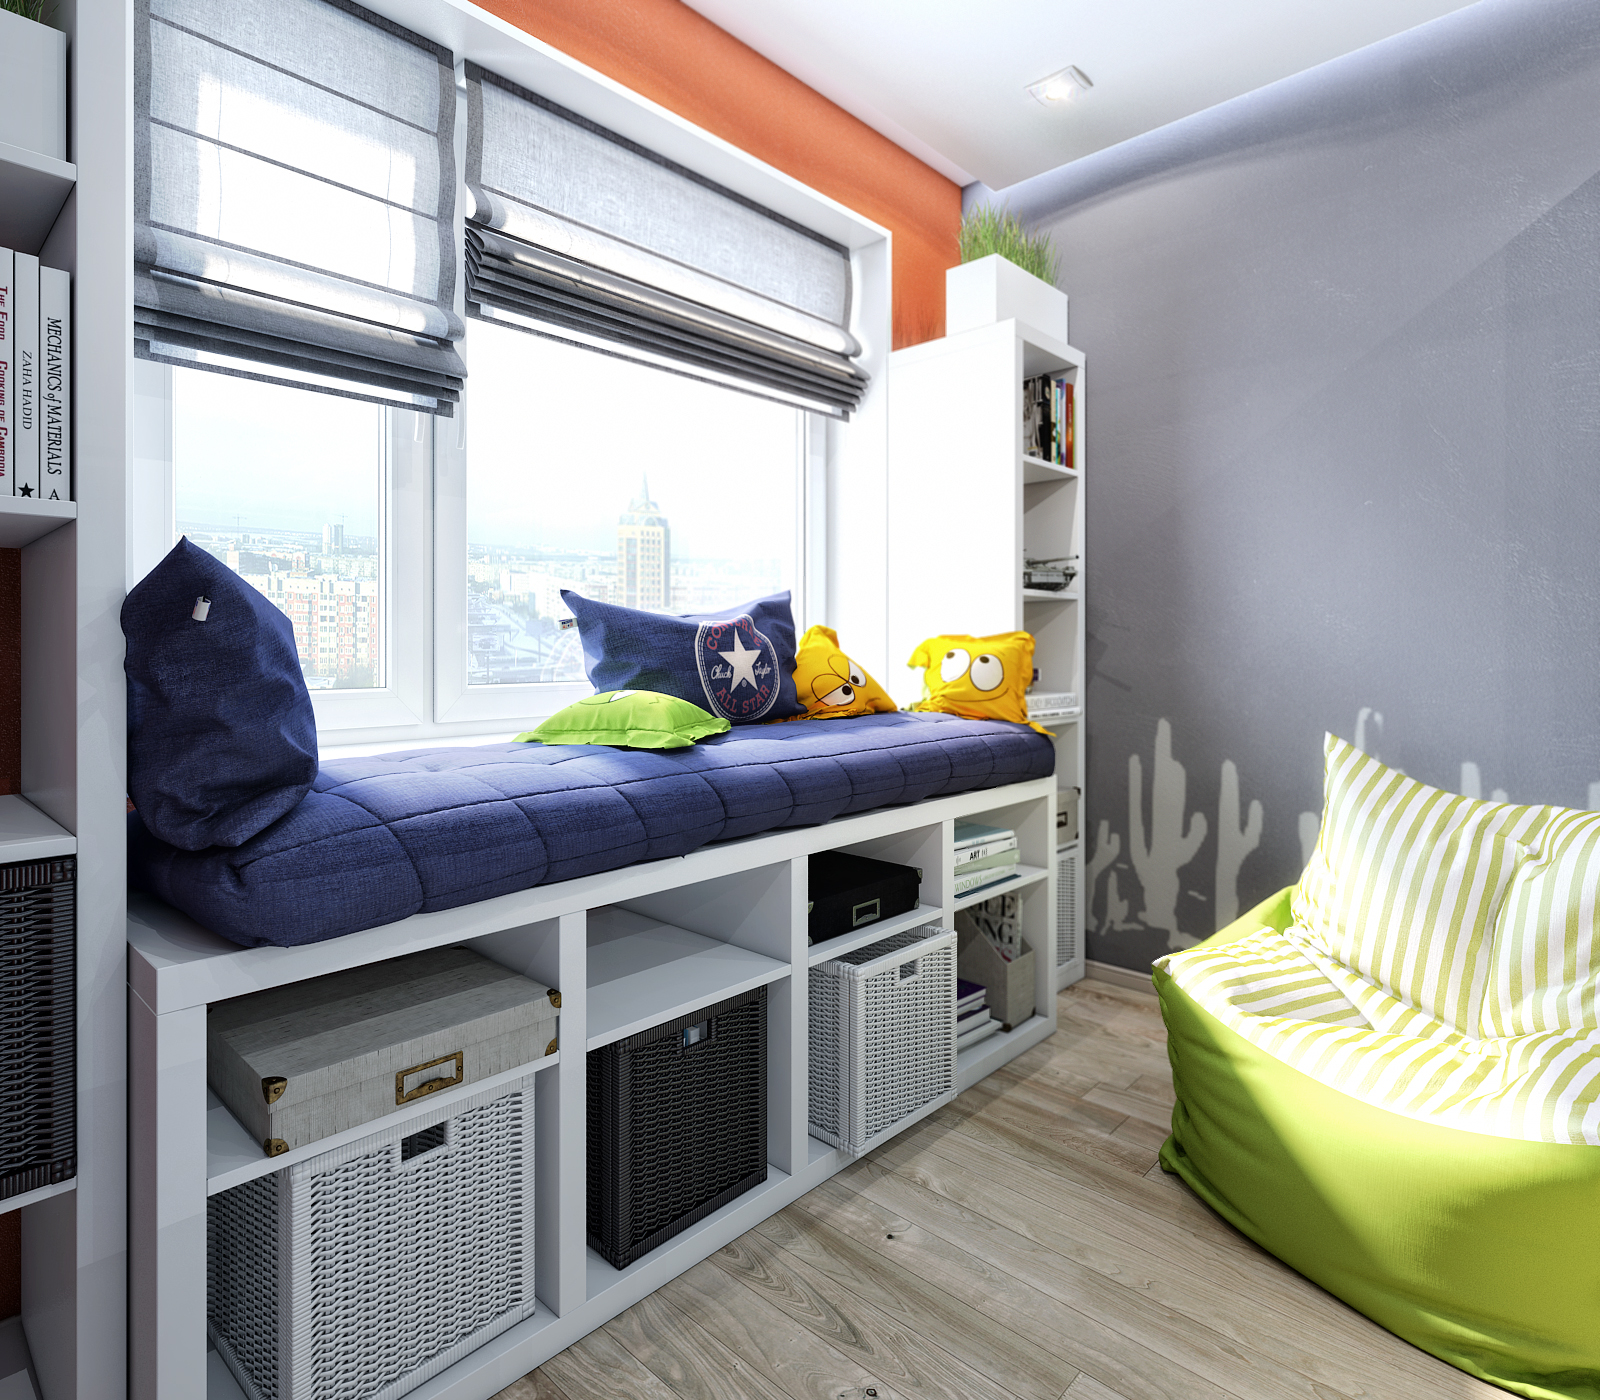 Красивый дизайн маленькой детской комнаты для двоих детей